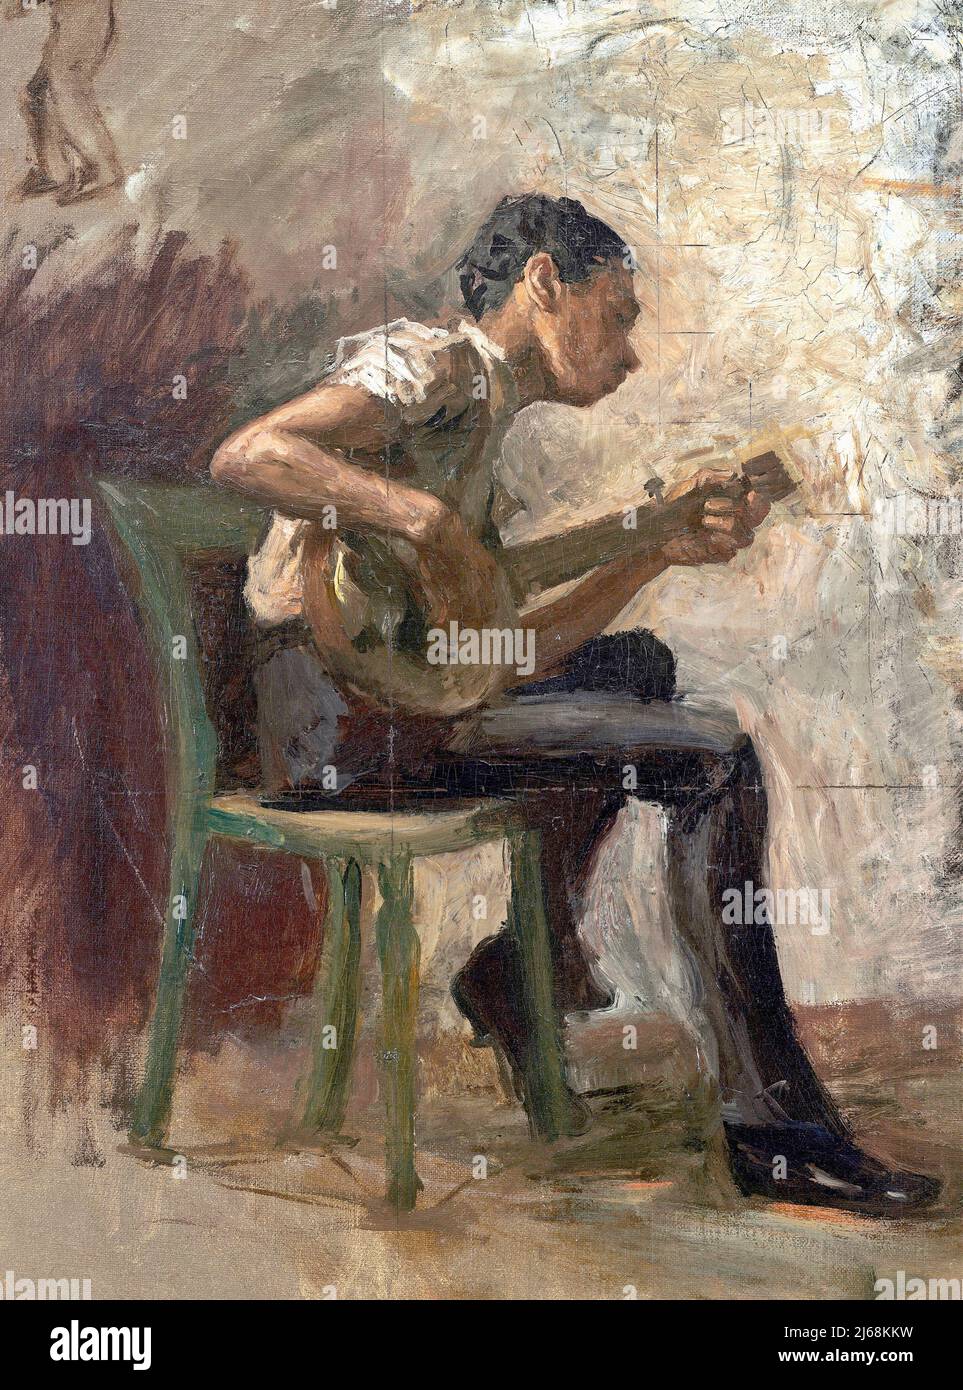 Thomas Eakins - The Banjo Player - 1877 Stock Photo